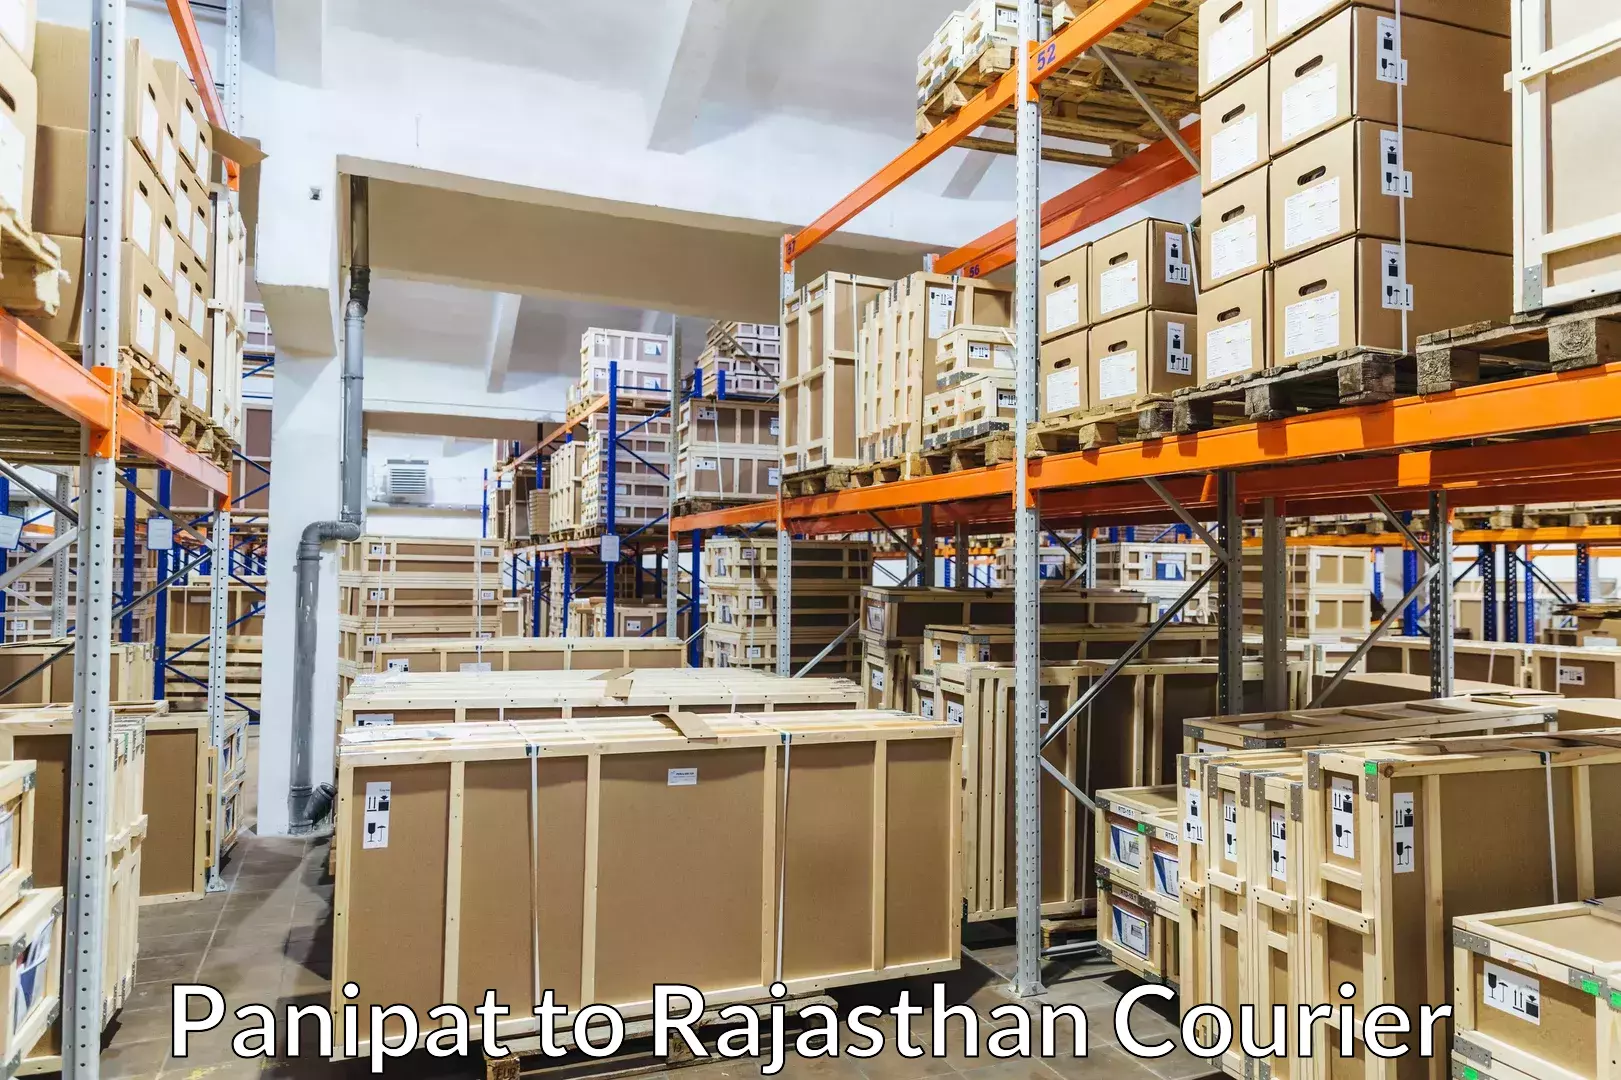 Baggage courier service Panipat to Pratapgarh Rajasthan